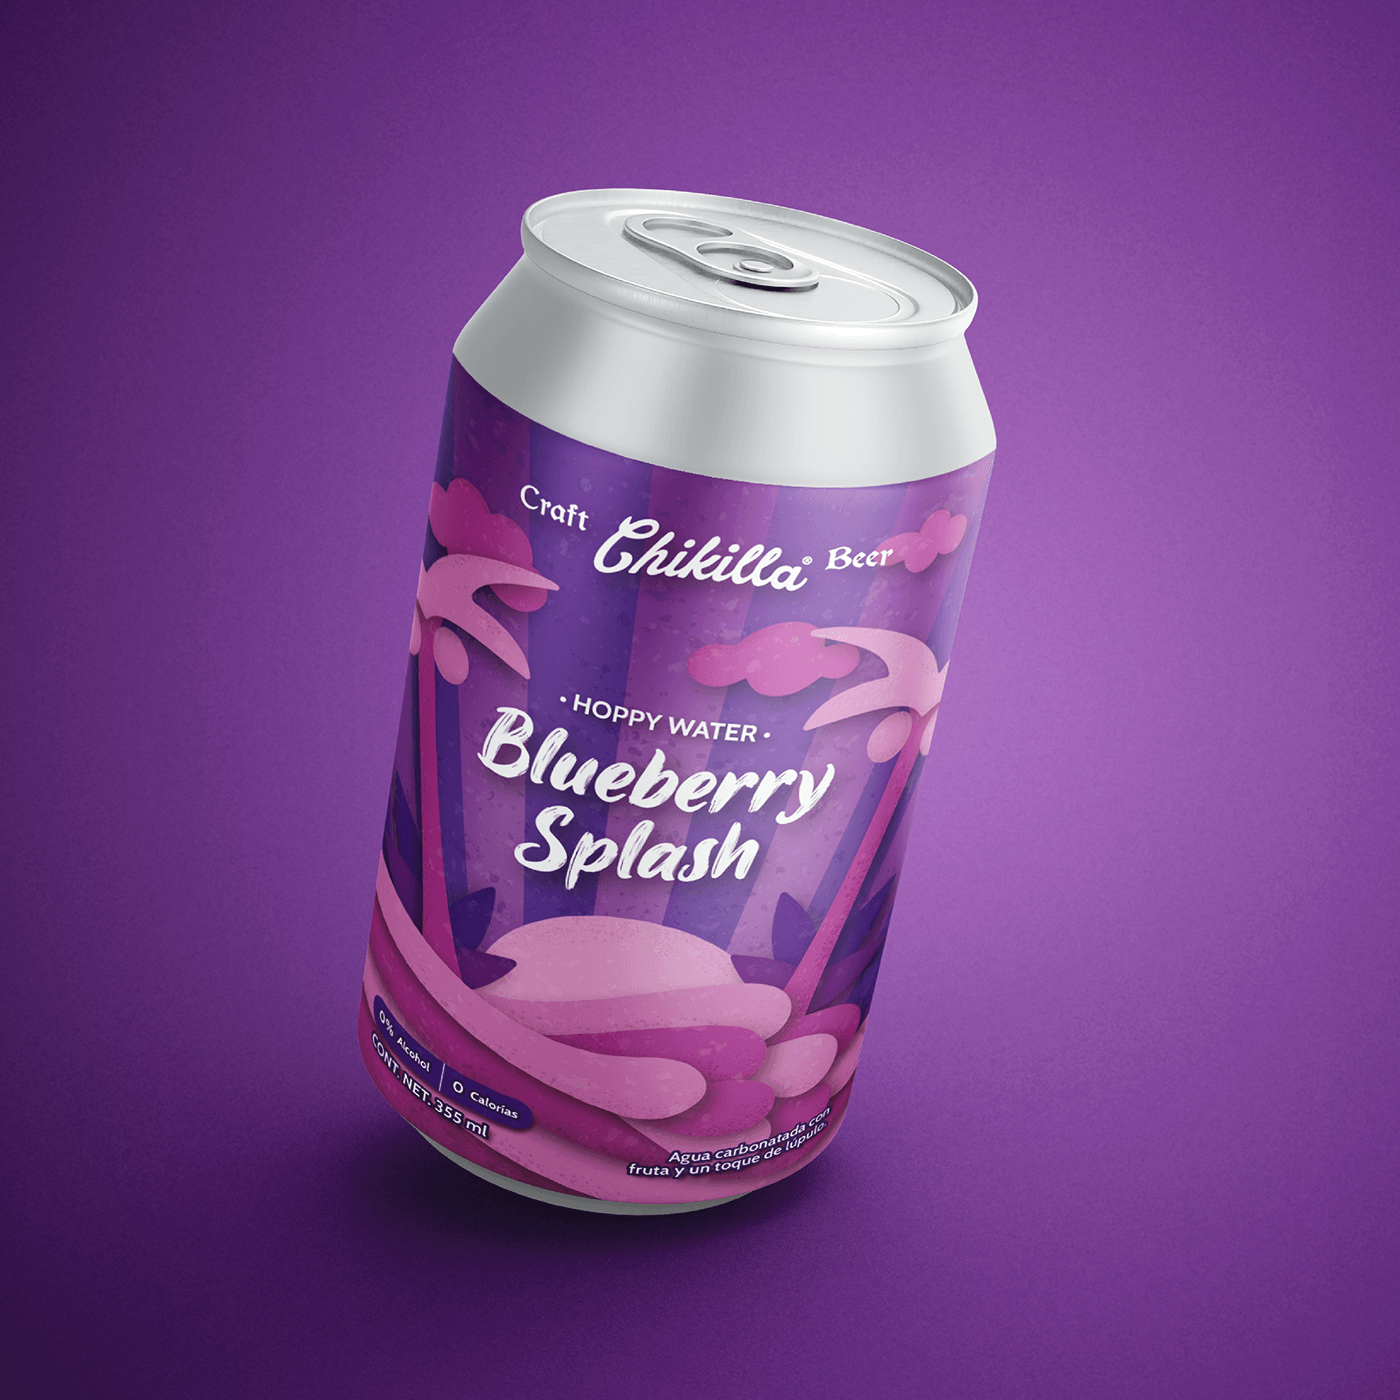 soft drink Packaging ILLUSTRATION  product design  digital illustration Graphic Designer labeling bottle package design  Digital Art 